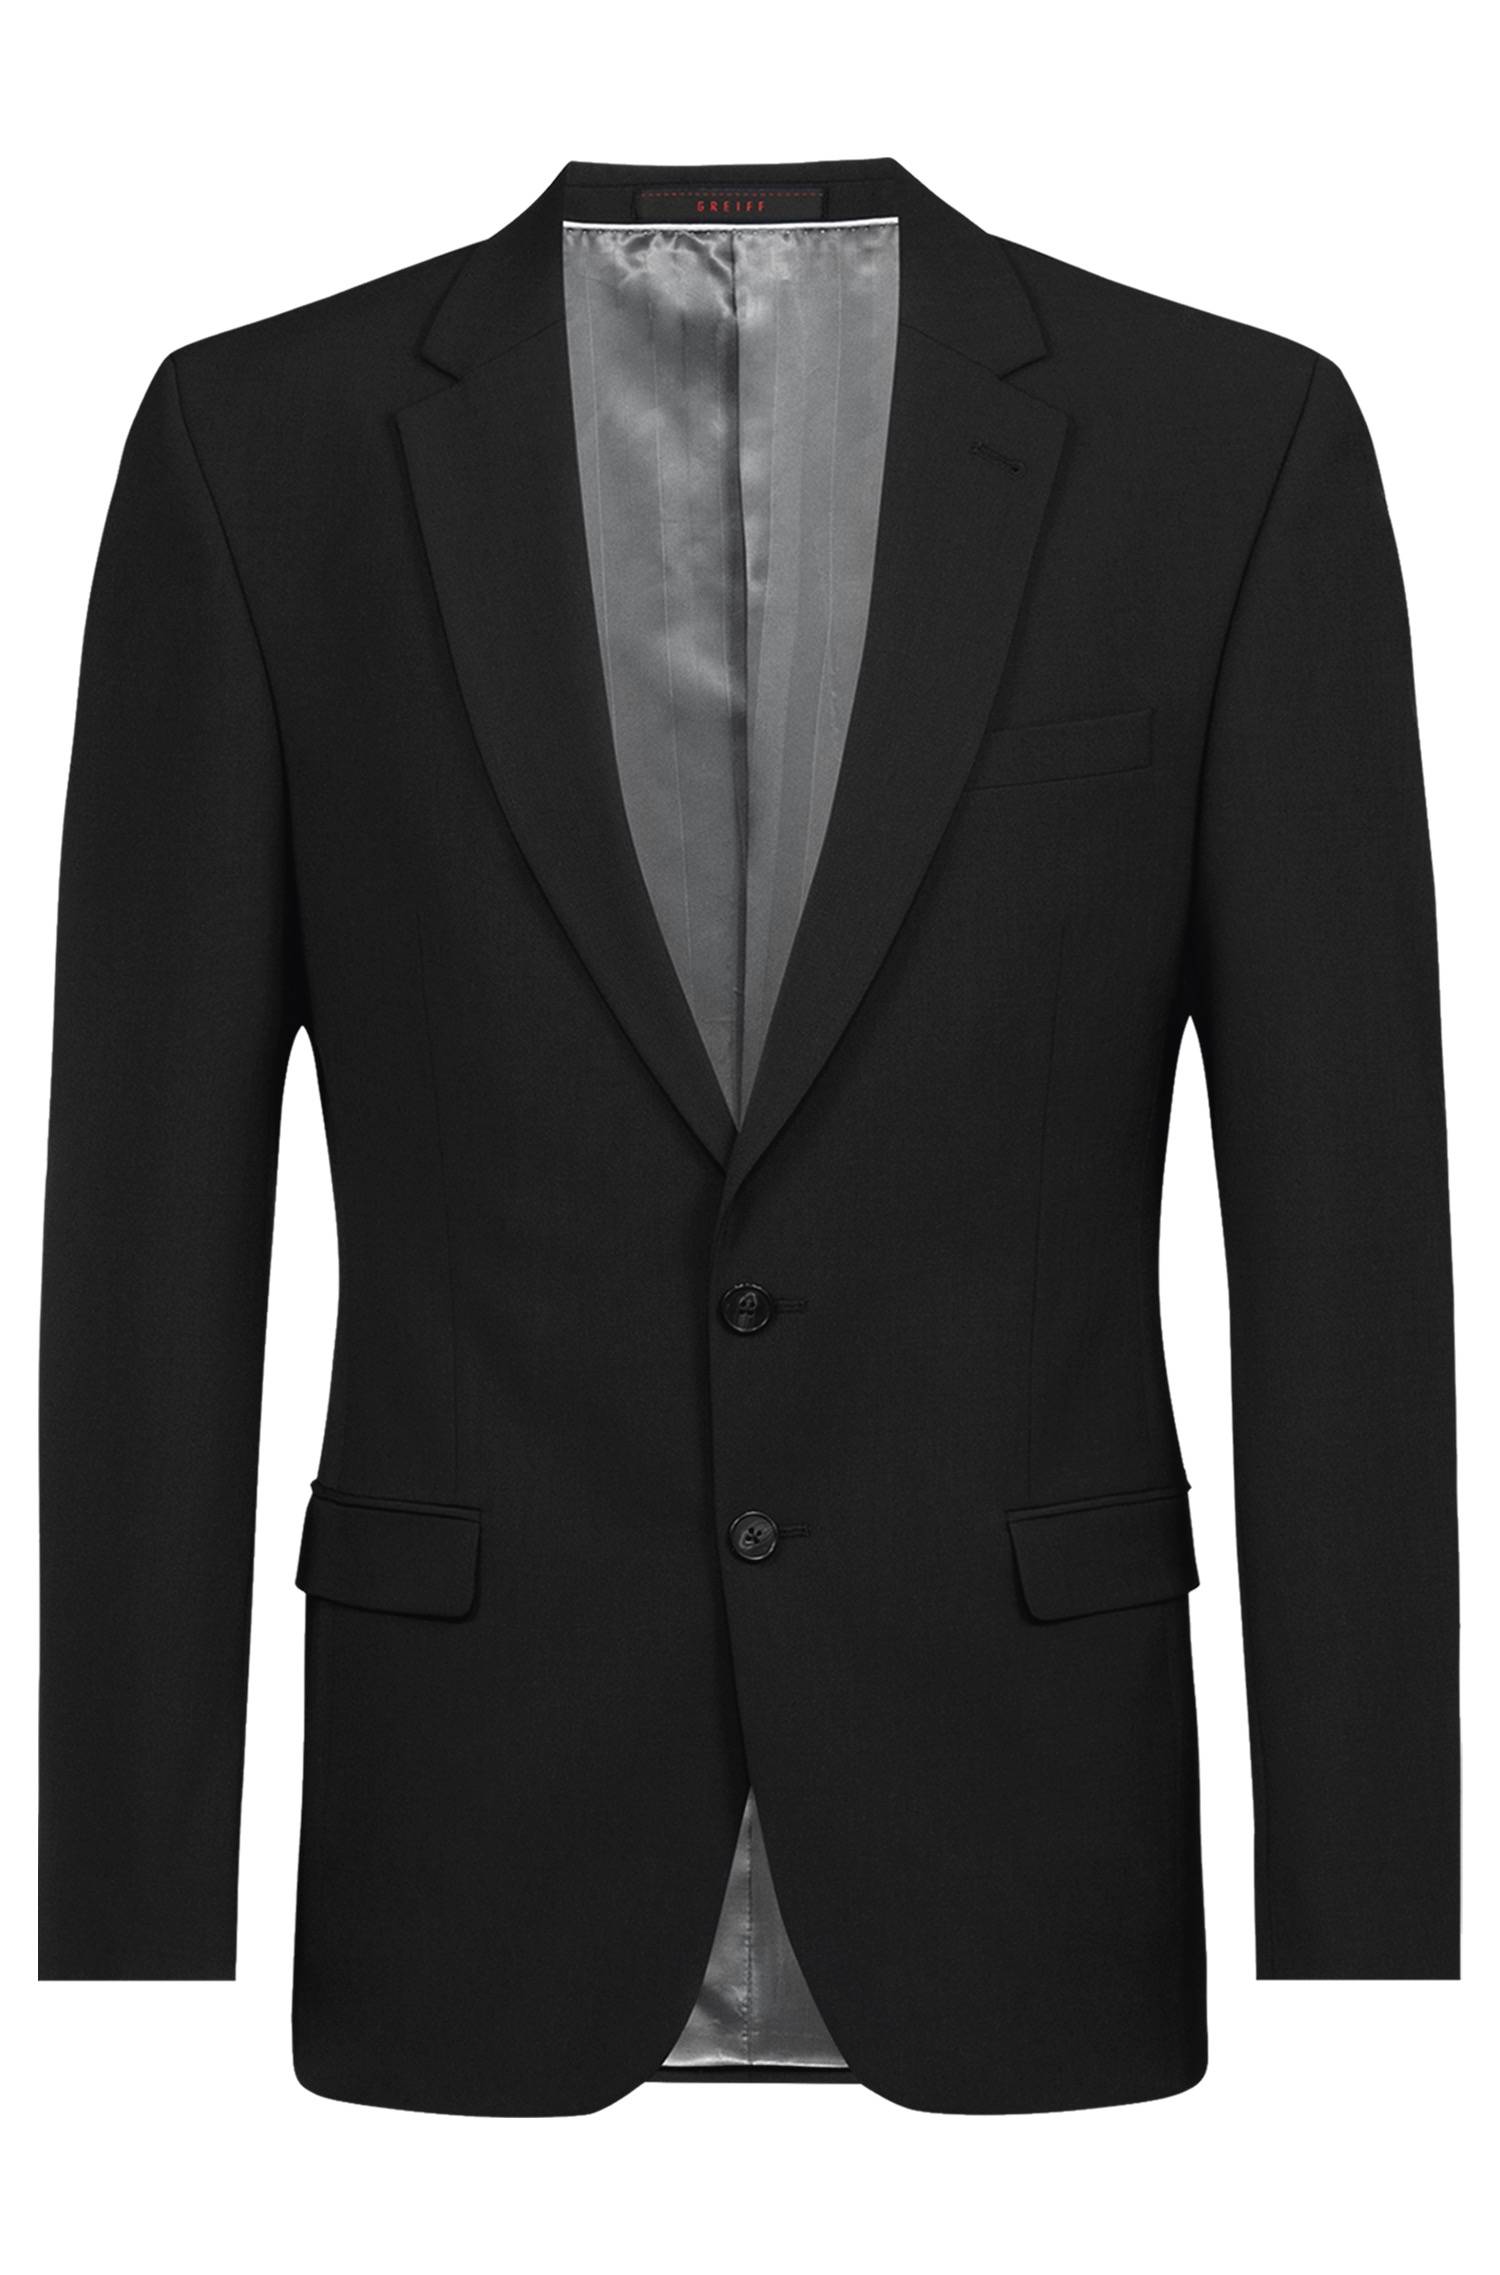 Men's jacket 2-button PREMIUM slim fit